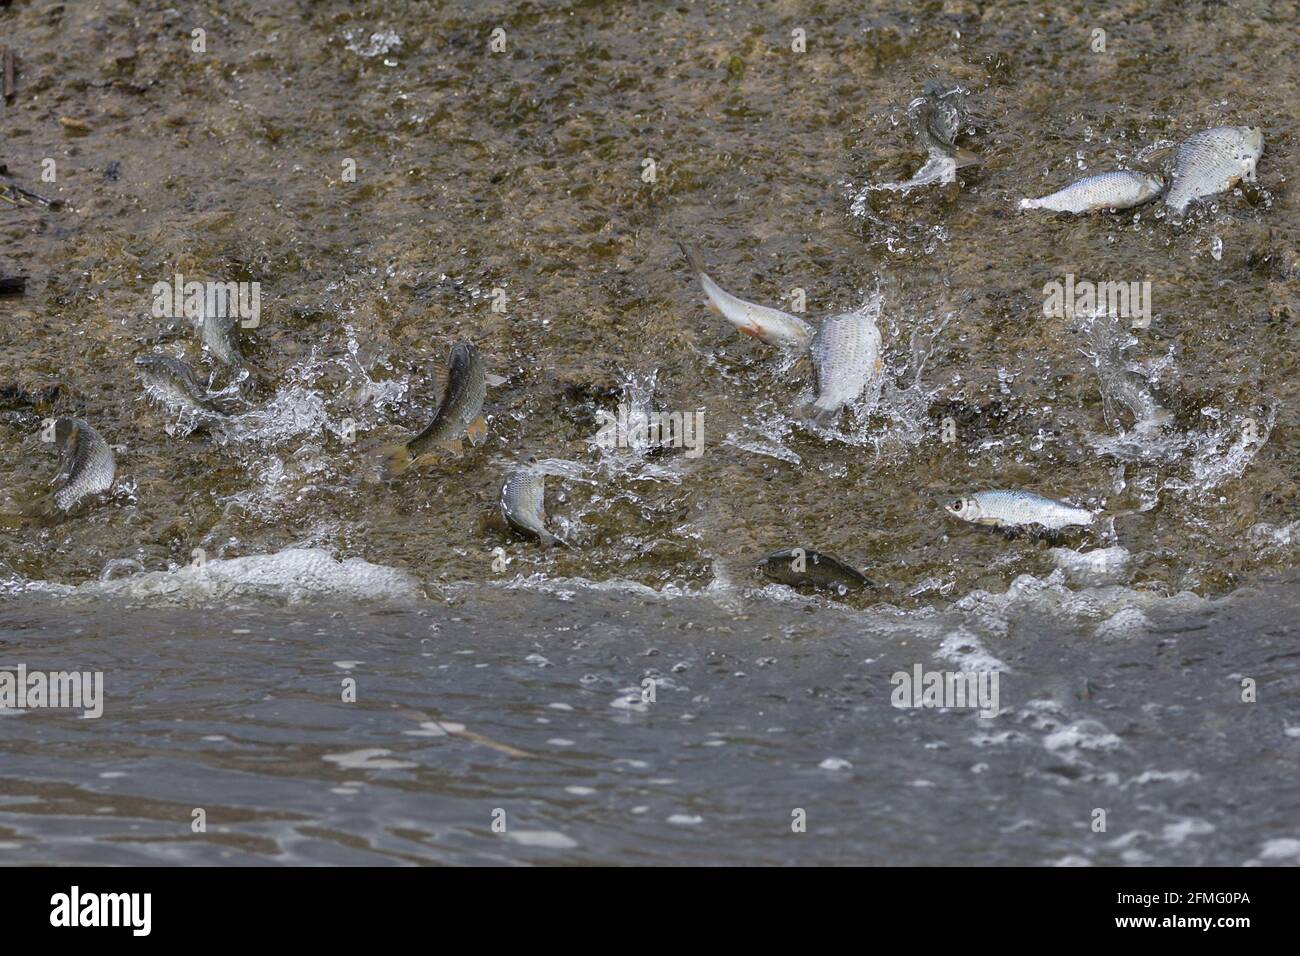 Süßwasserfische, die aus dem See ausgespült wurden, versuchten, in seichtem, schnell fließendem Wasser wieder auf eine Betonrampe zu schwimmen. Kakerlaken Silber schuppigen Fisch in Gefahr. Stockfoto